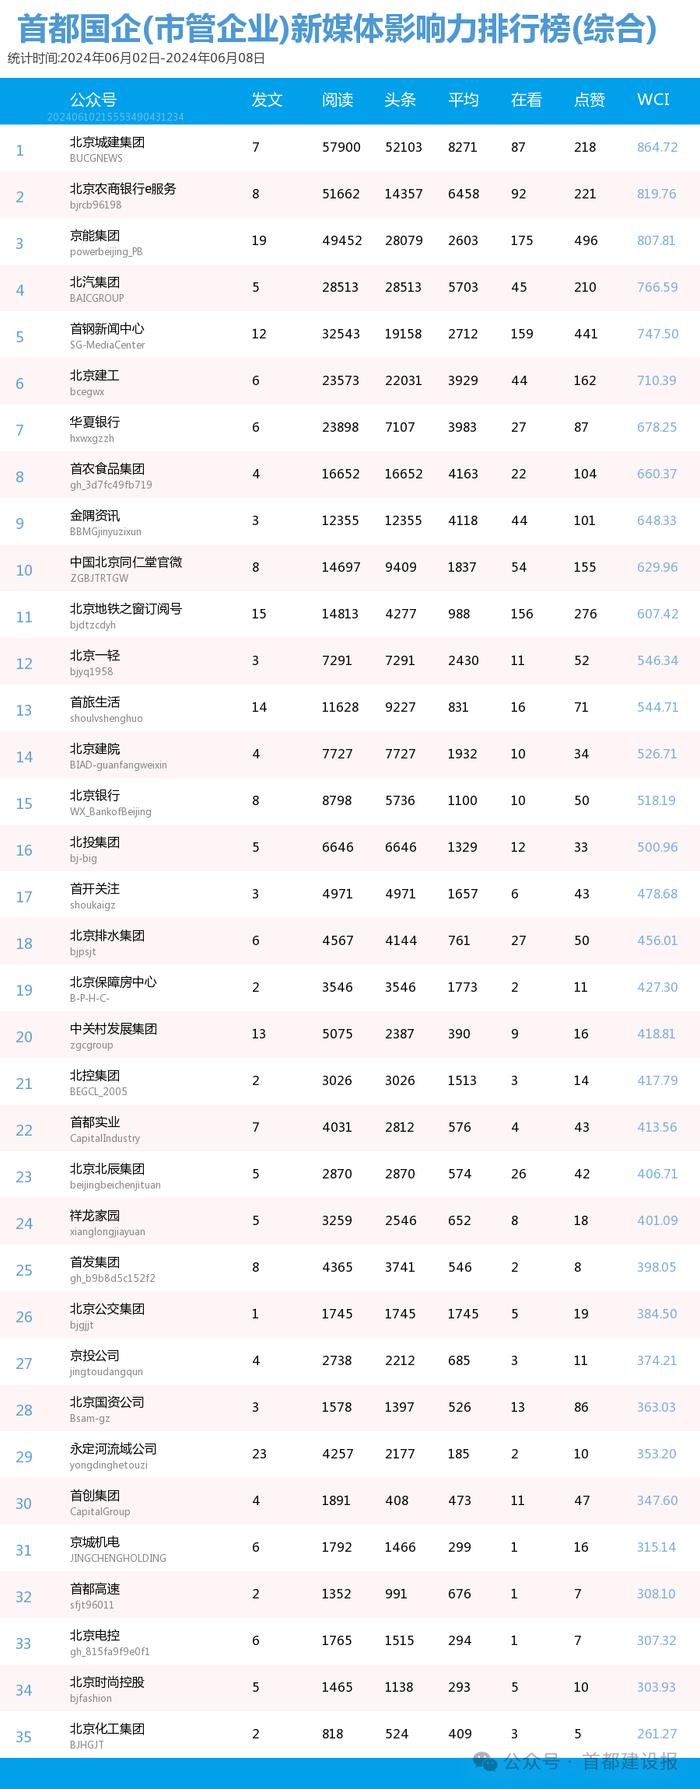 【北京国企新媒体影响力排行榜】5月月榜及周榜(6.2-6.8)第411期